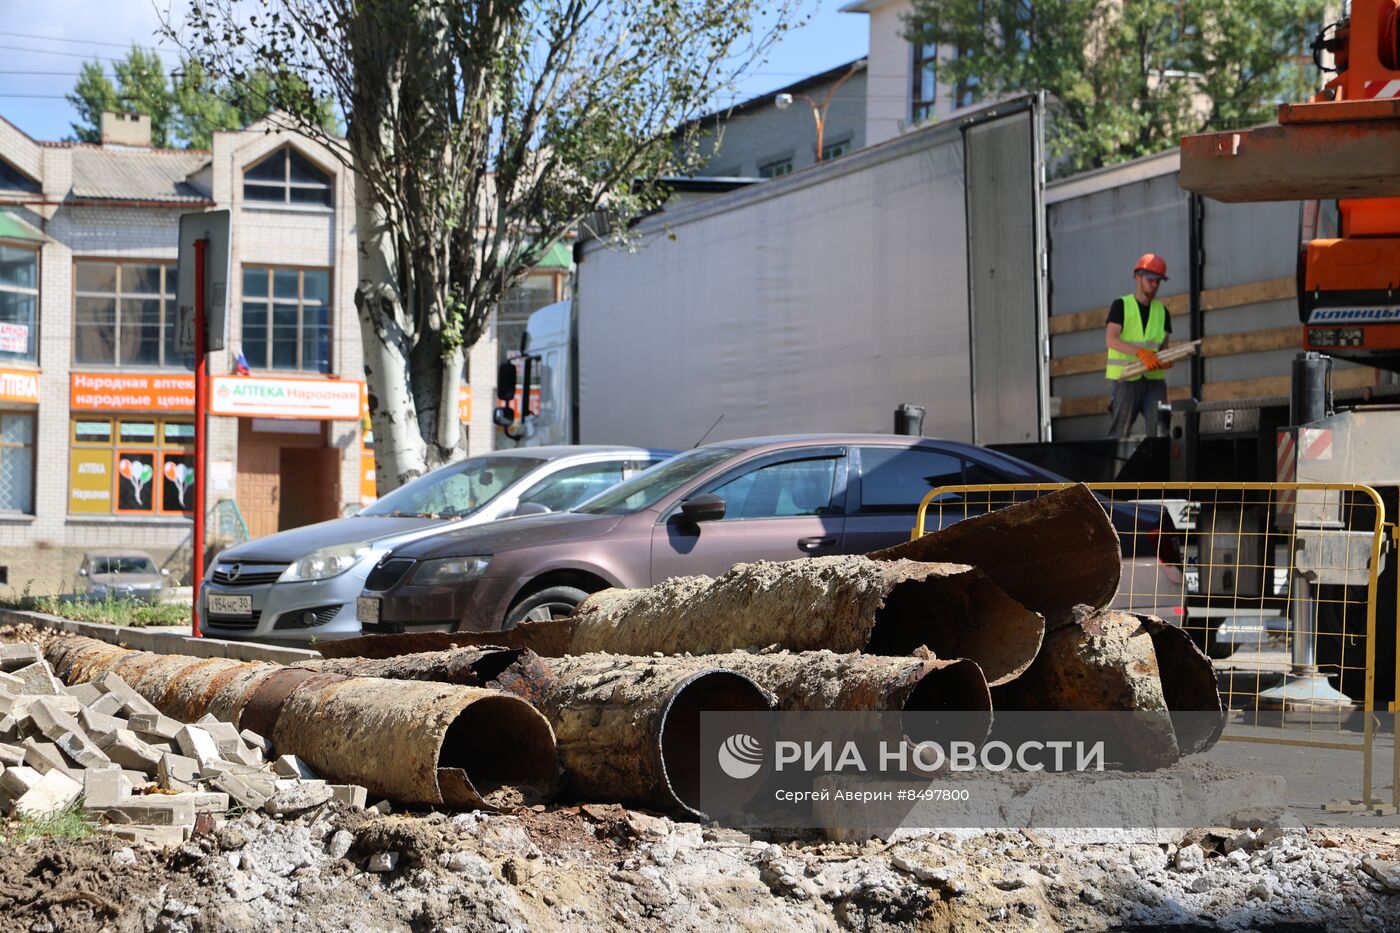 Строительные работы компании "Мосгаз" в Донецке